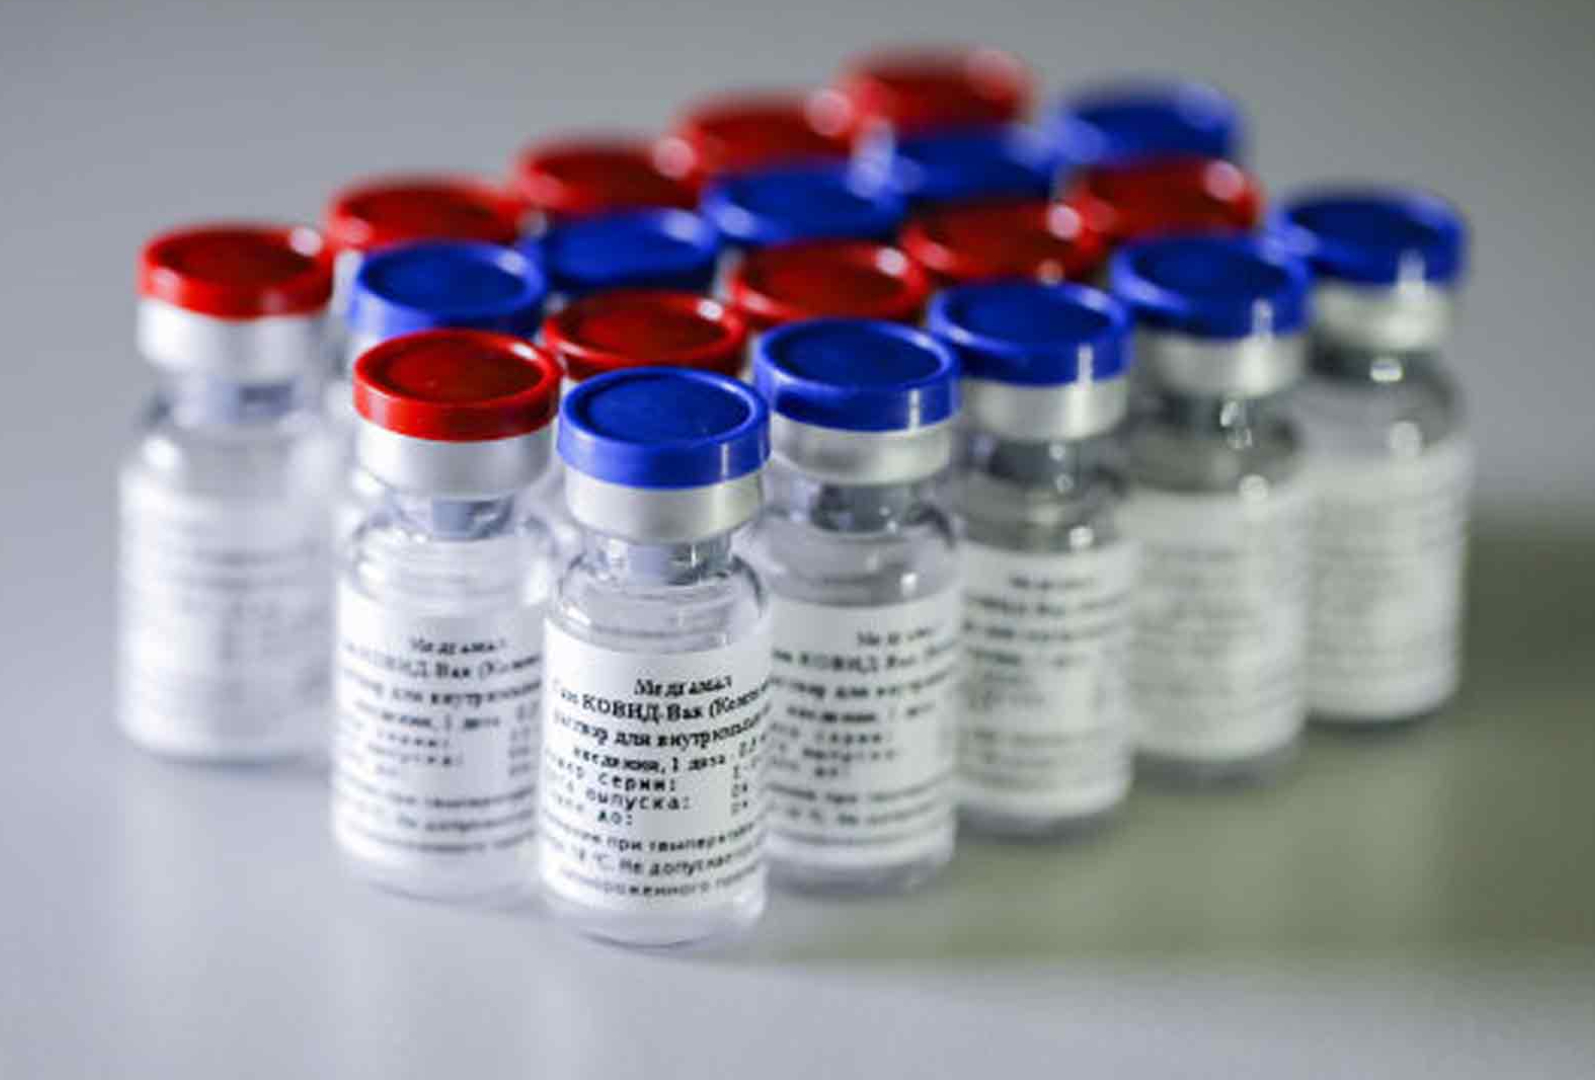 Serum Institute Of India To Produce 200 Million Corona Vaccine Doses